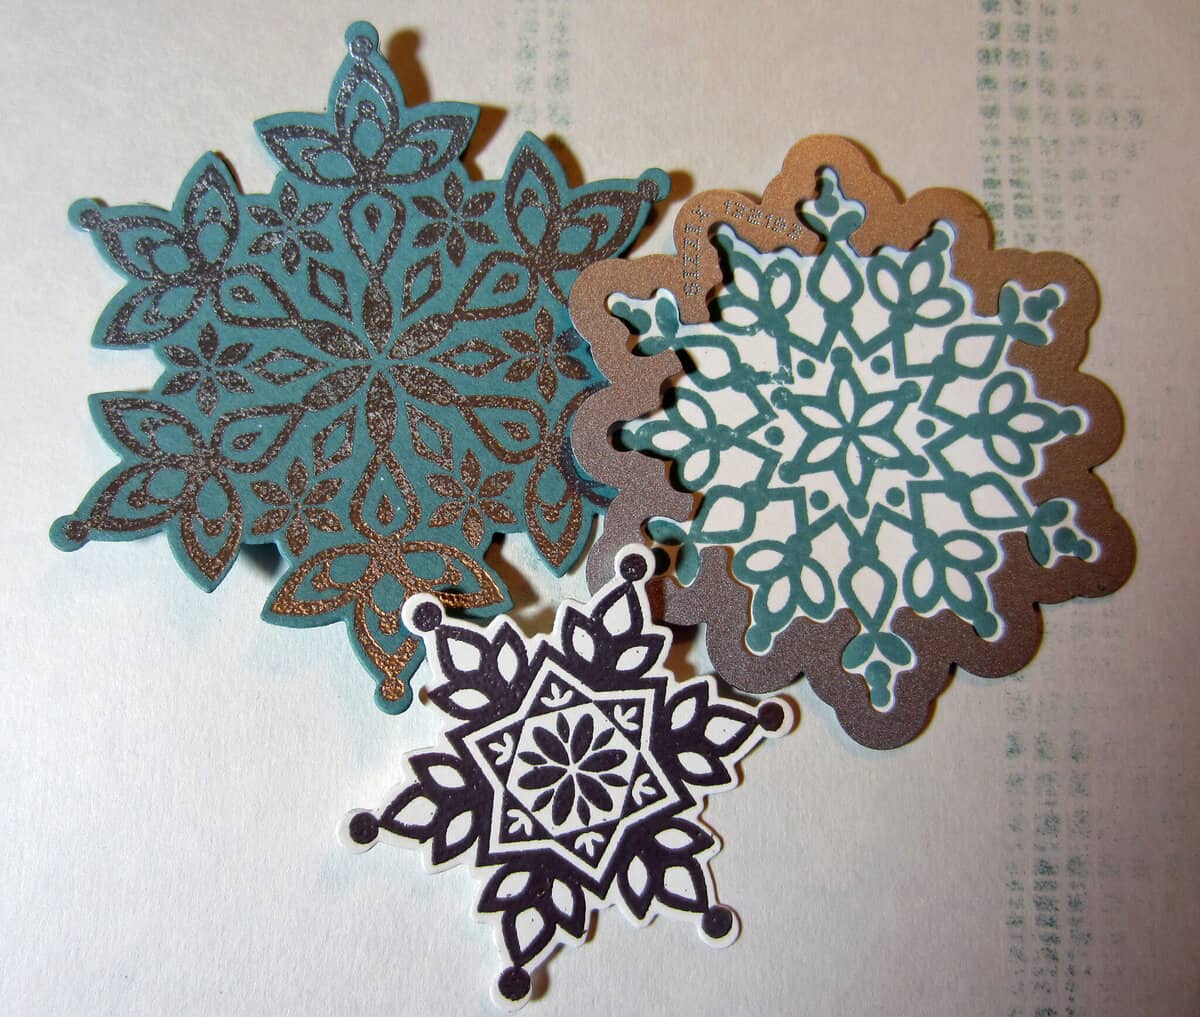 stamped snowflakes